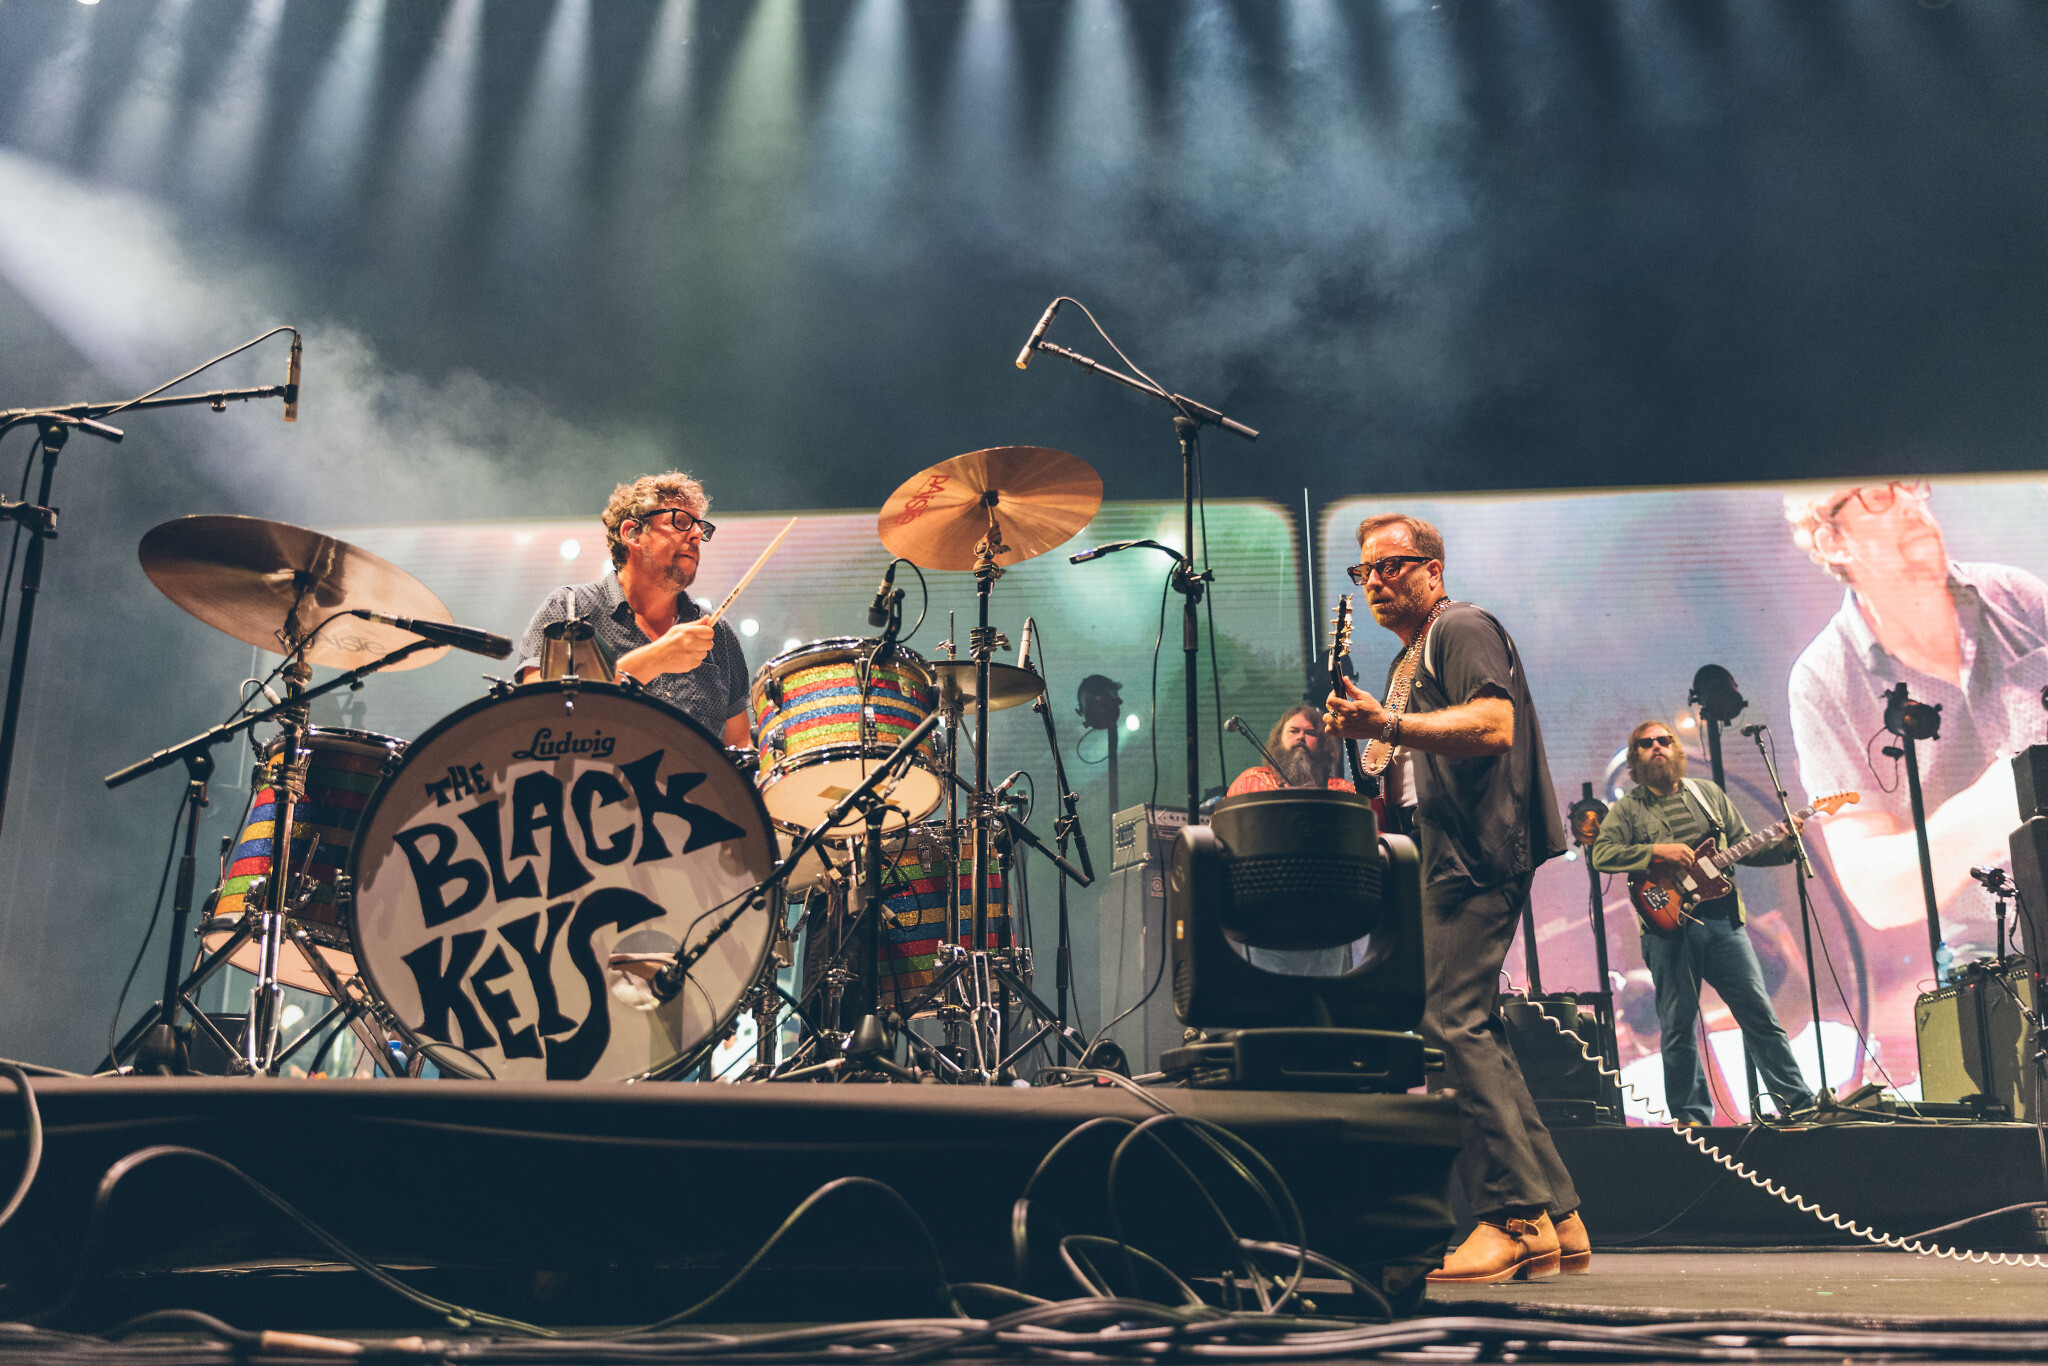 The Black Keys: Inside Their New Album, 'Let's Rock